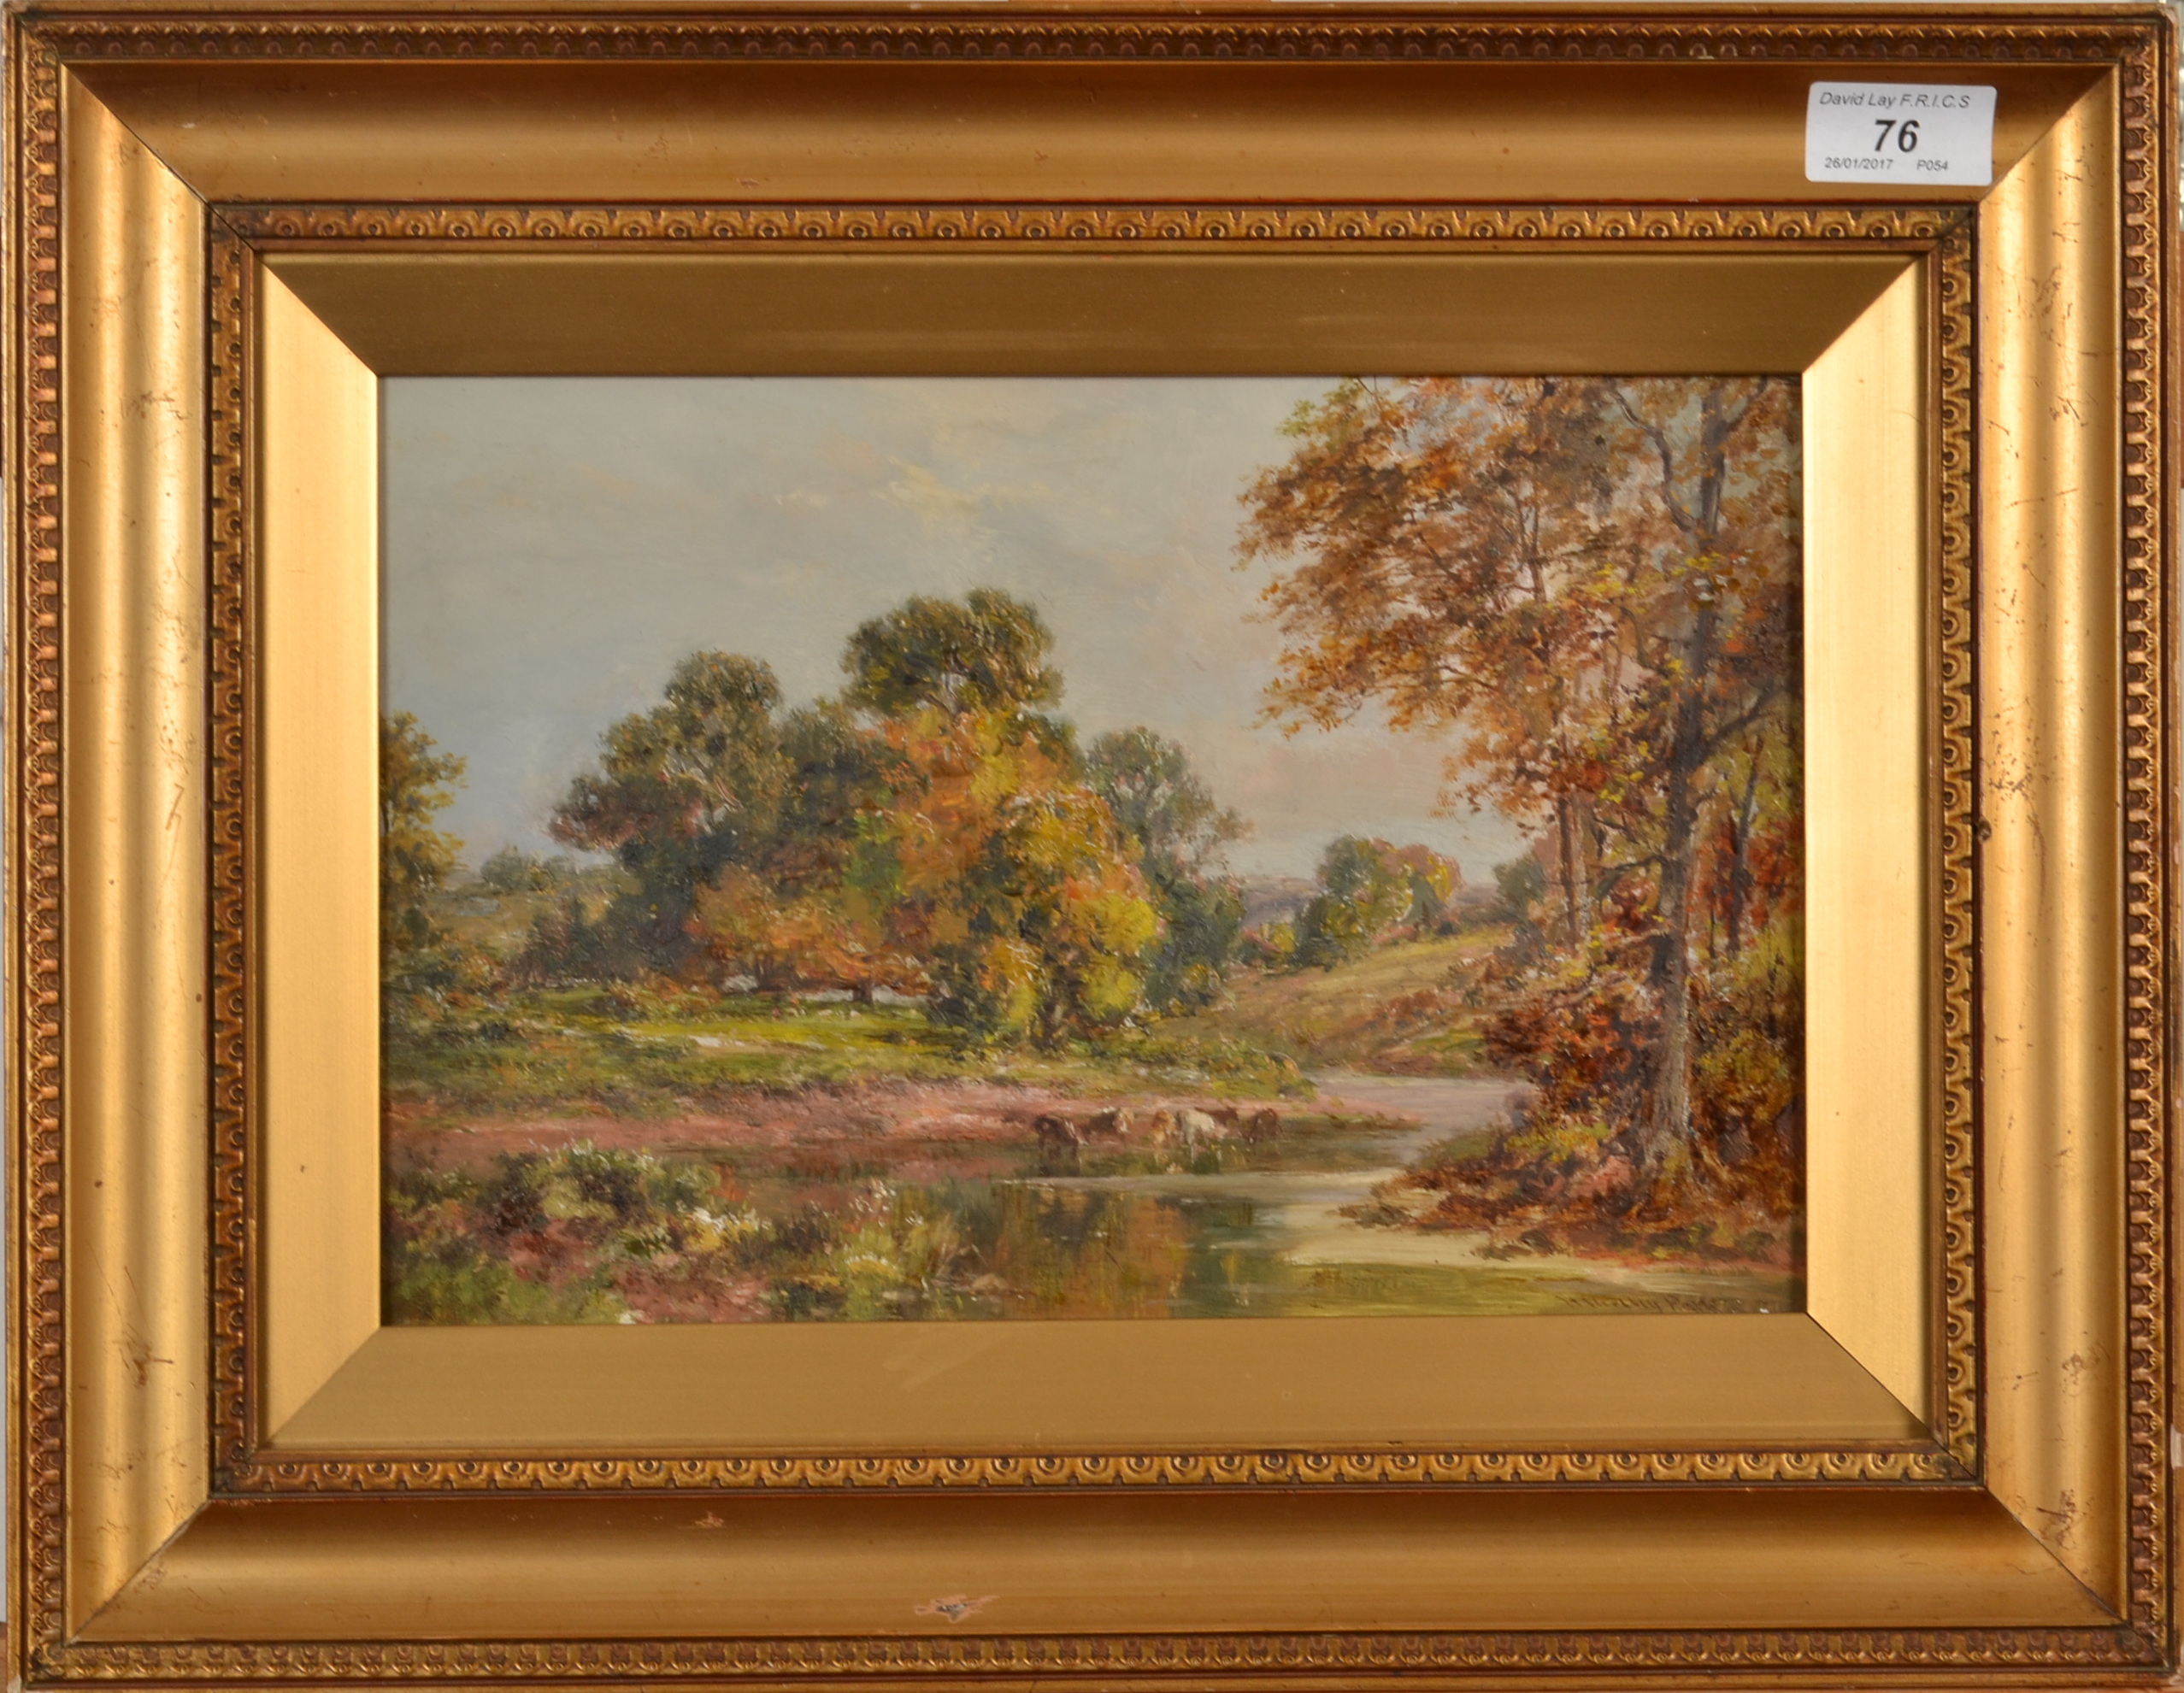 HENRY MORLEY PARK River Landscape Oil on board Signed 20 x 30cm - Image 2 of 2